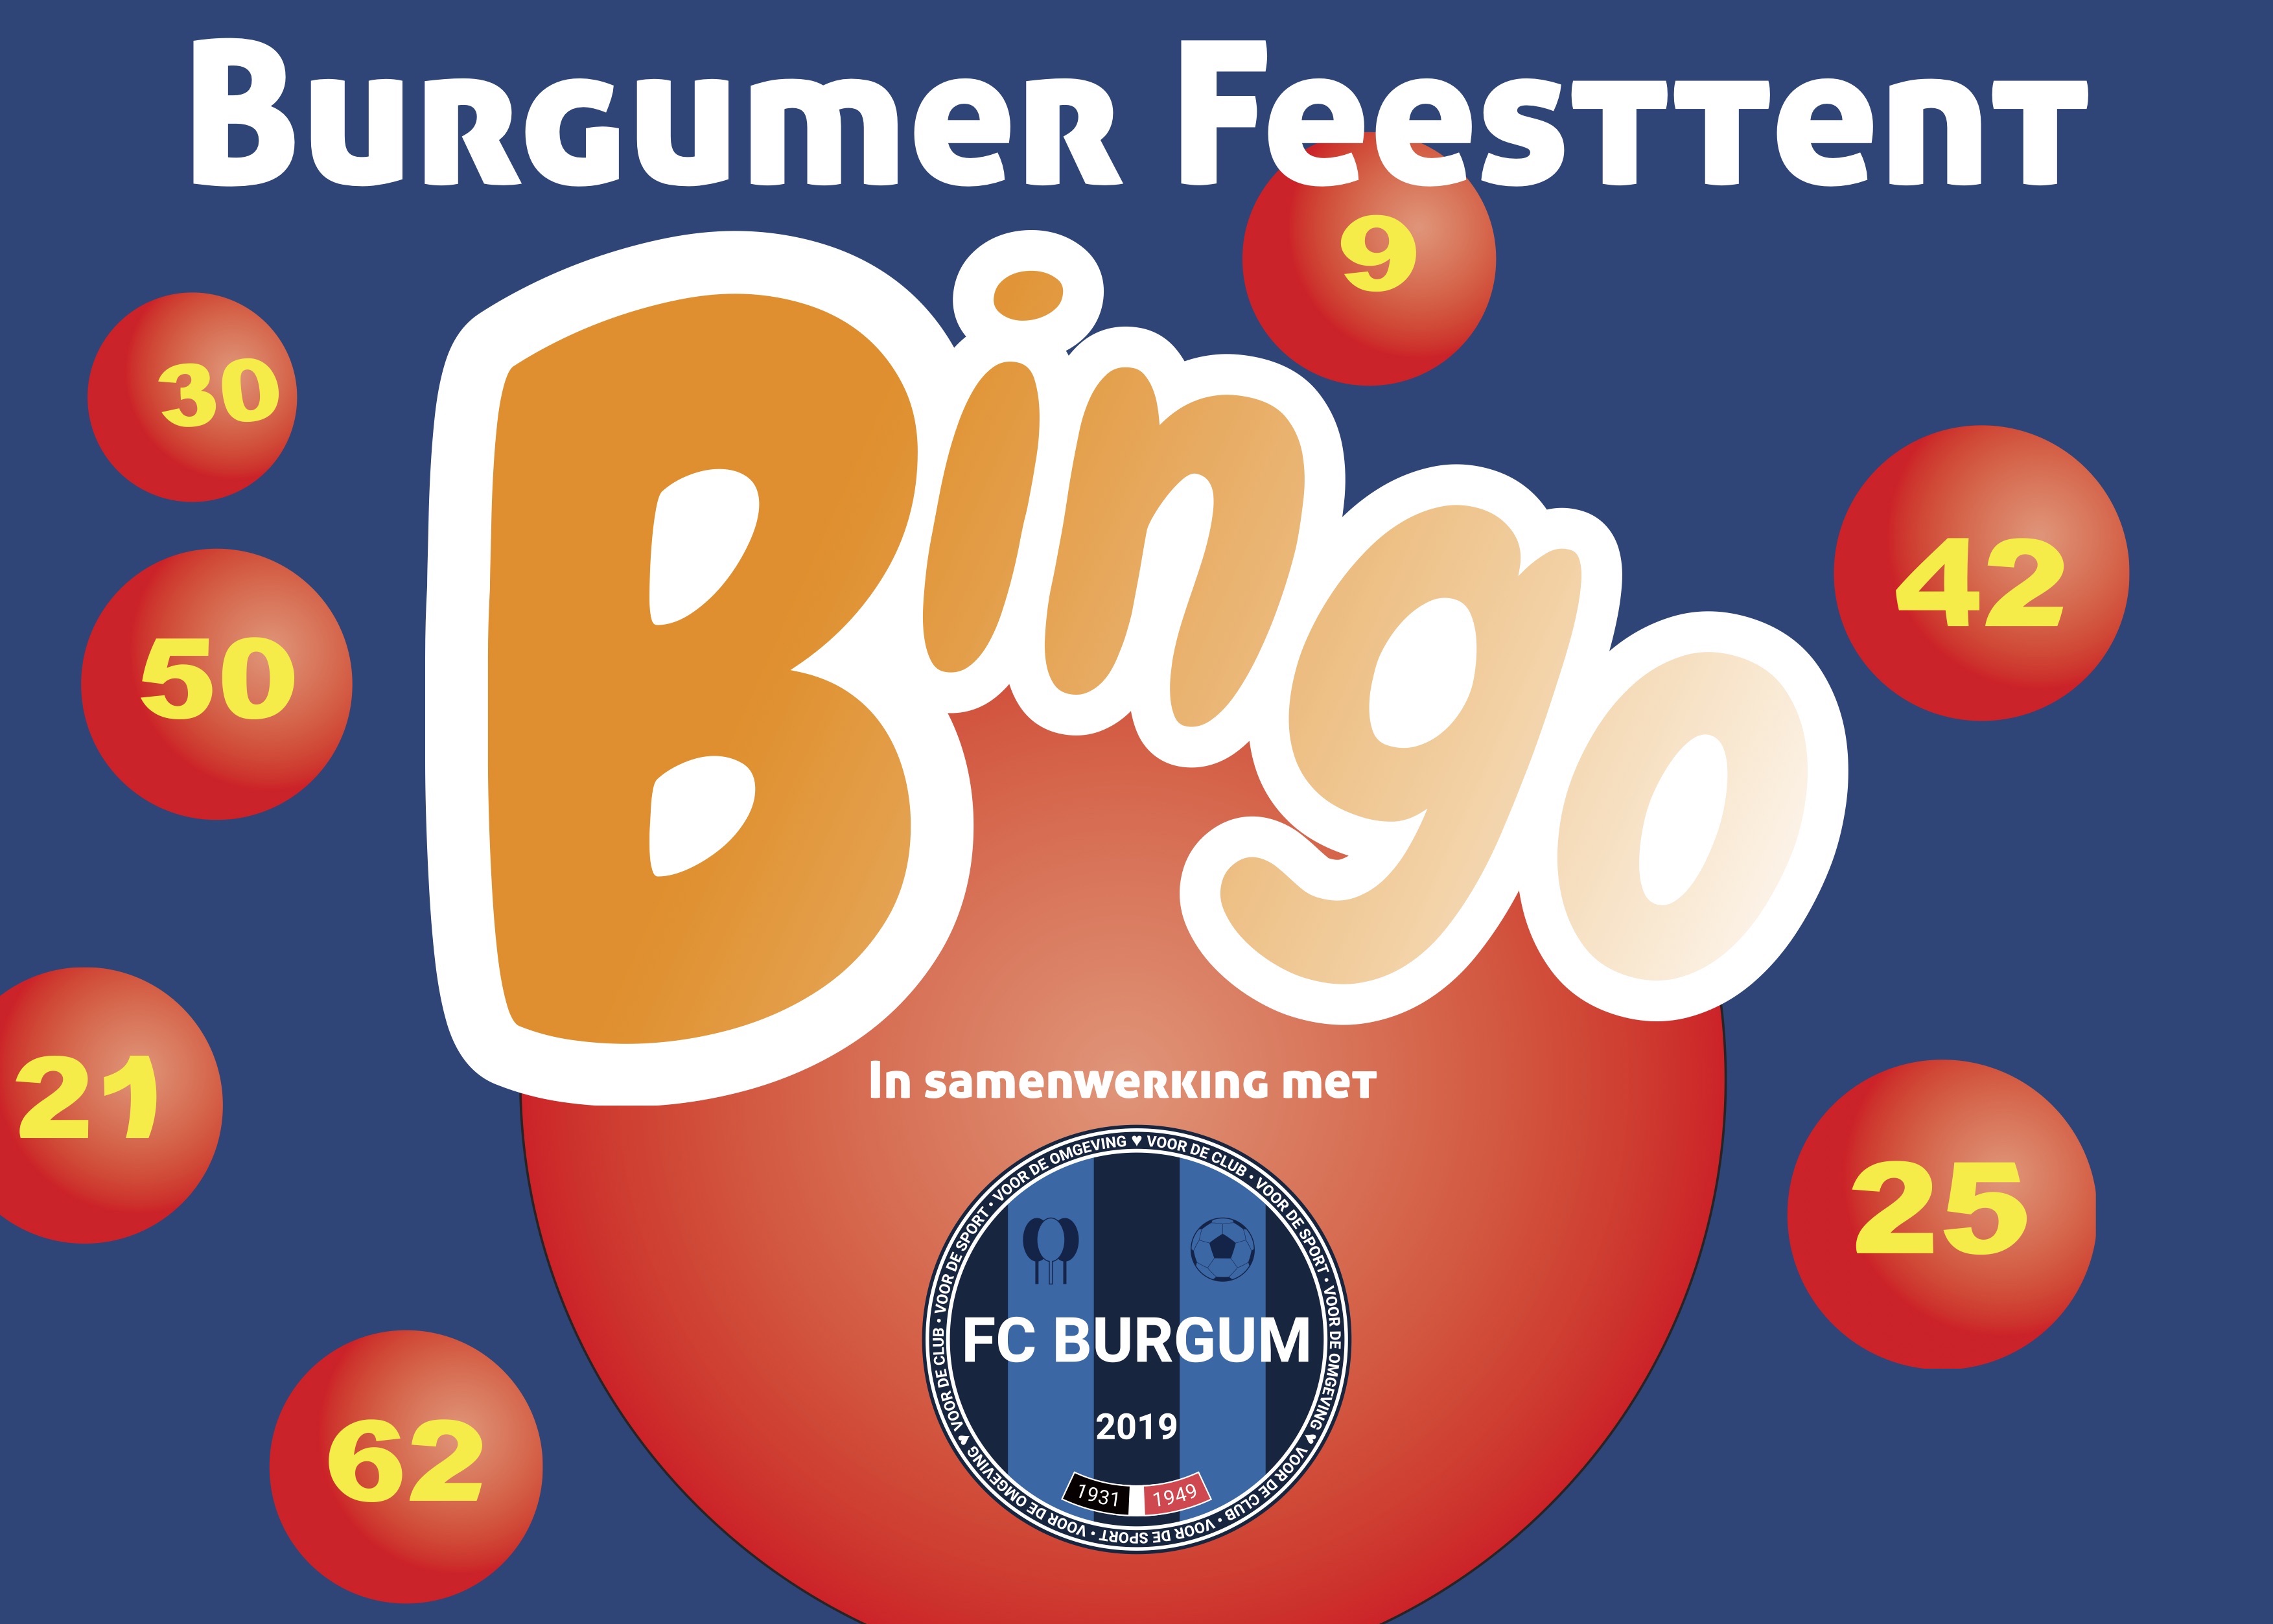 Speel jij mee met de FC Burgum Bingo?